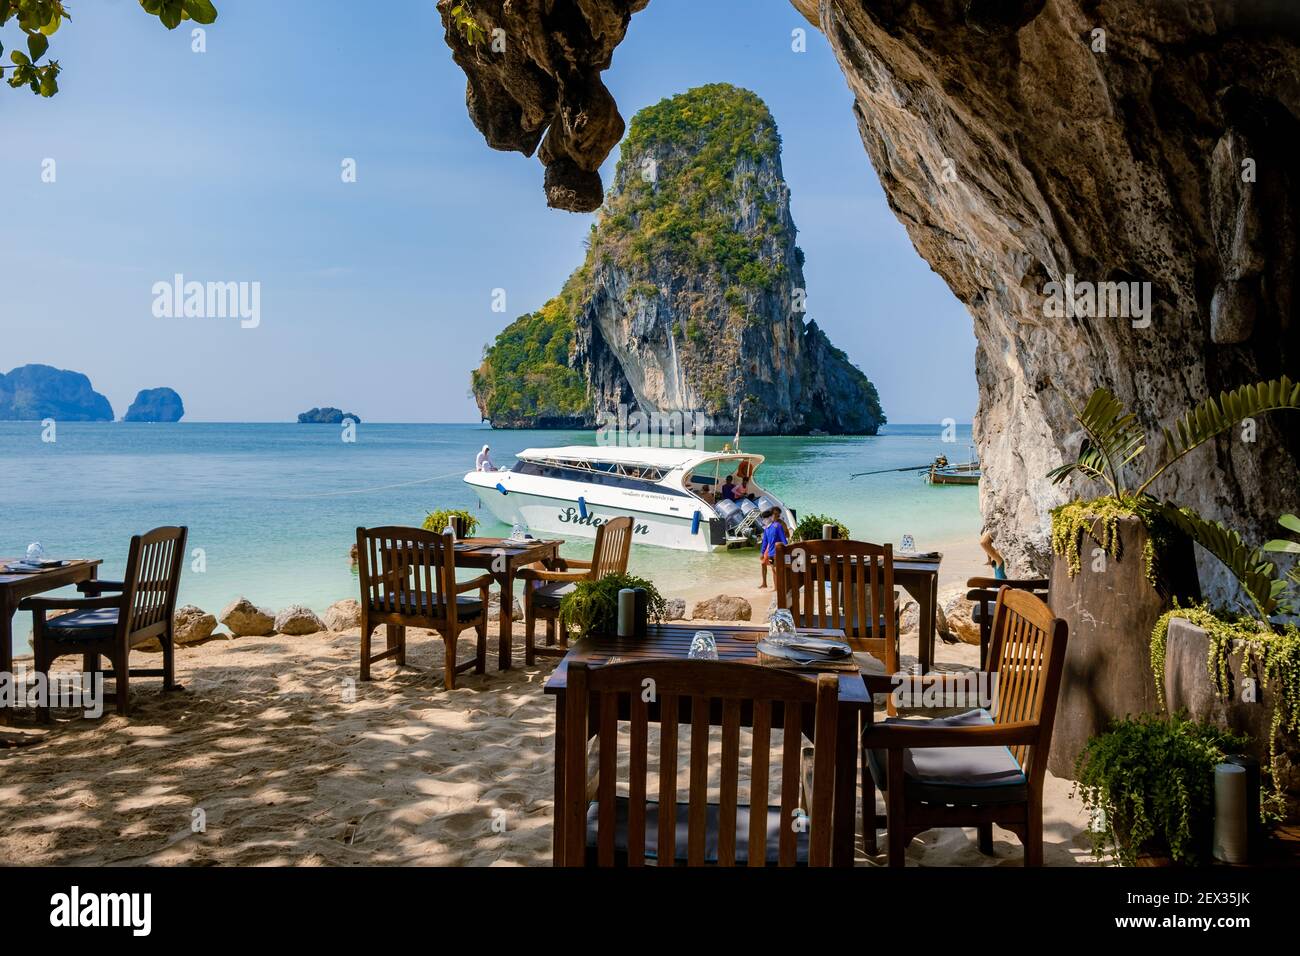 Restaurant Abendessen Tische oder Mittagessen am Strand Railay Strand mit einer schönen Kulisse von Ko Rang NOK Insel in Thailand Krabi. Klippen in Krabi am Strand Stockfoto